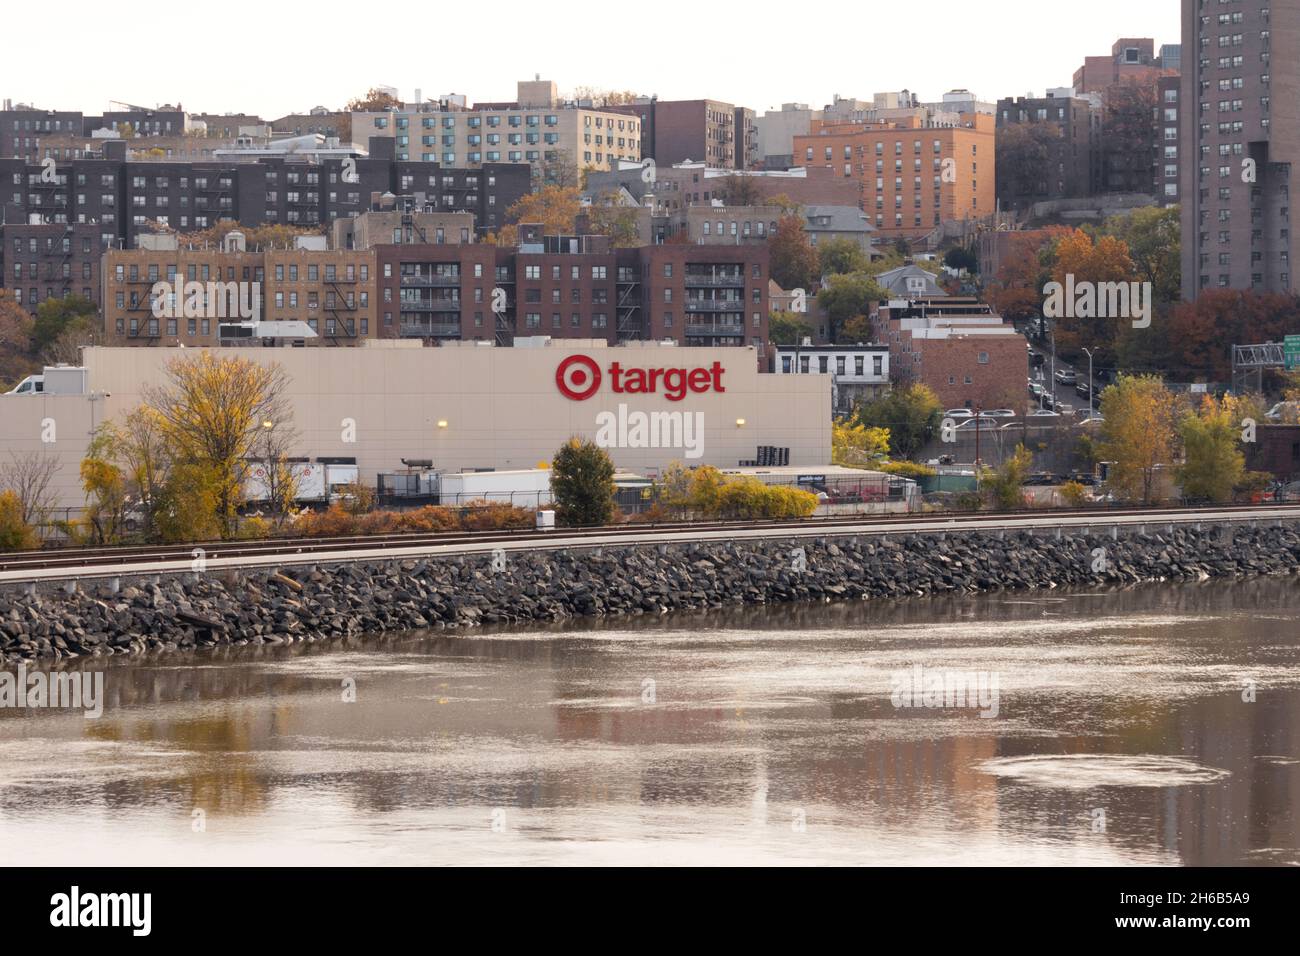 Un punto vendita al dettaglio Target nel Bronx visto dall'altra parte del fiume Harlem, una delle più grandi aziende al dettaglio d'America Foto Stock